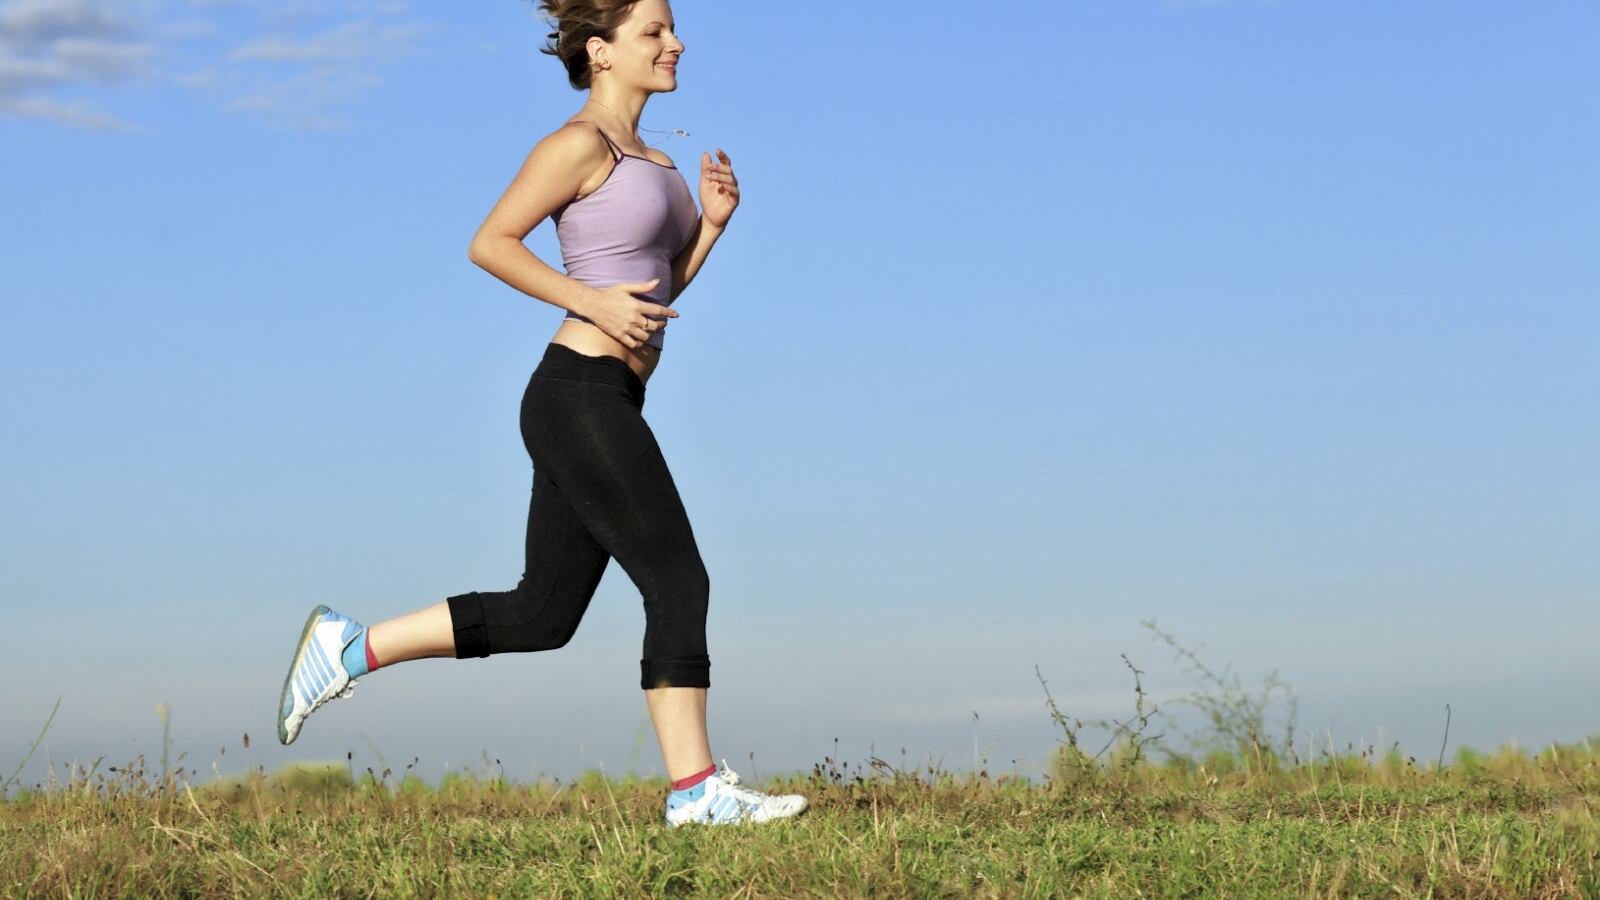 El deporte aeróbico llega a ser la actividad física ideal para los pacientes con enfermedades respiratorias.